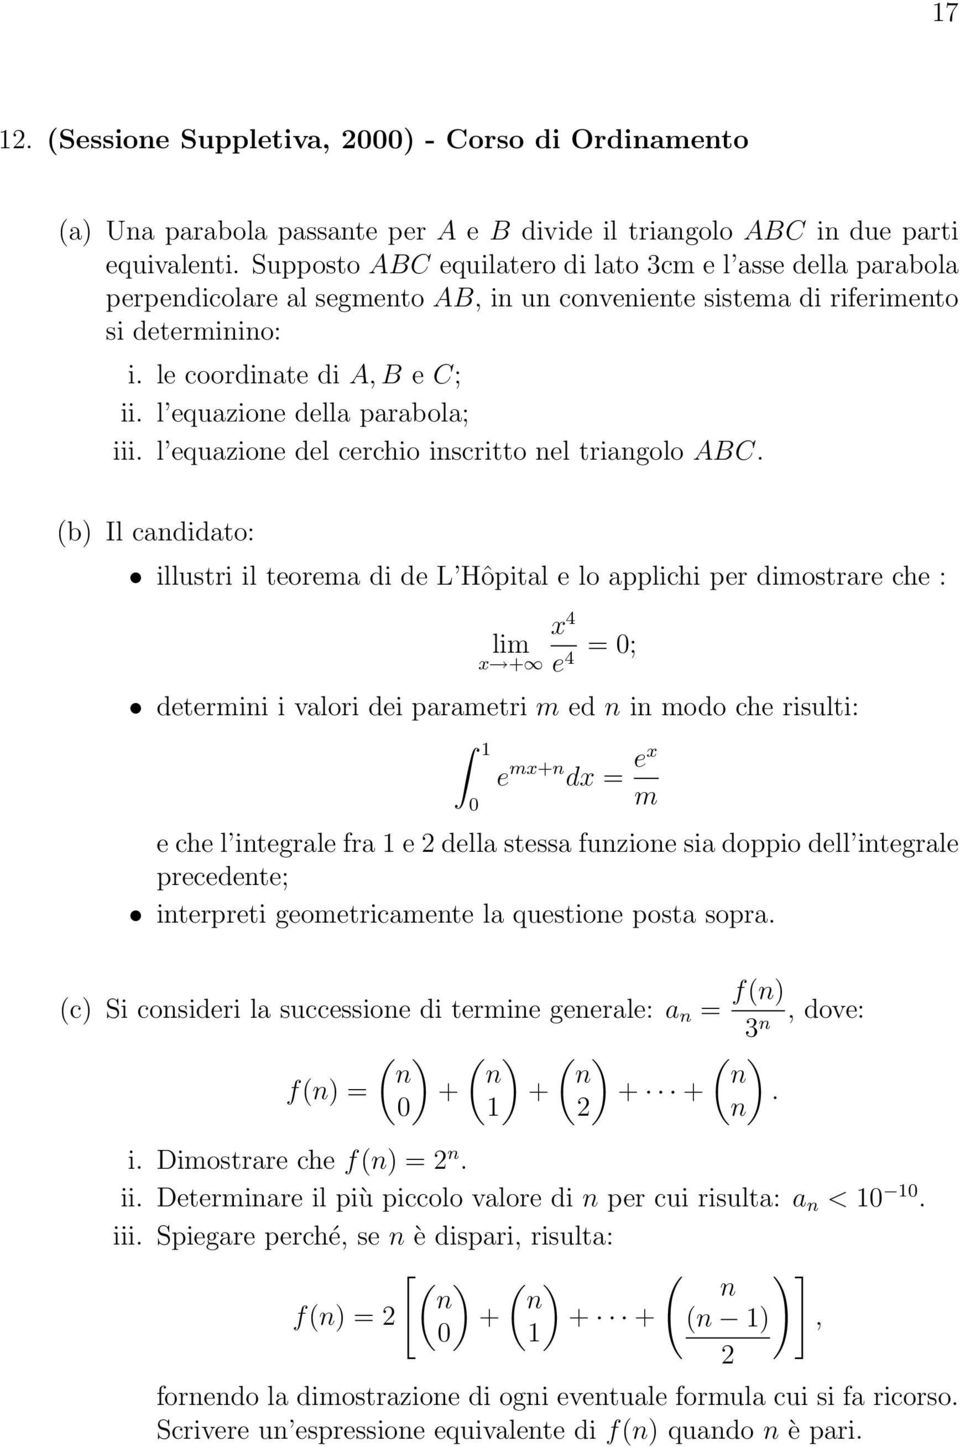 l equazione della parabola; iii. l equazione del cerchio inscritto nel triangolo ABC.